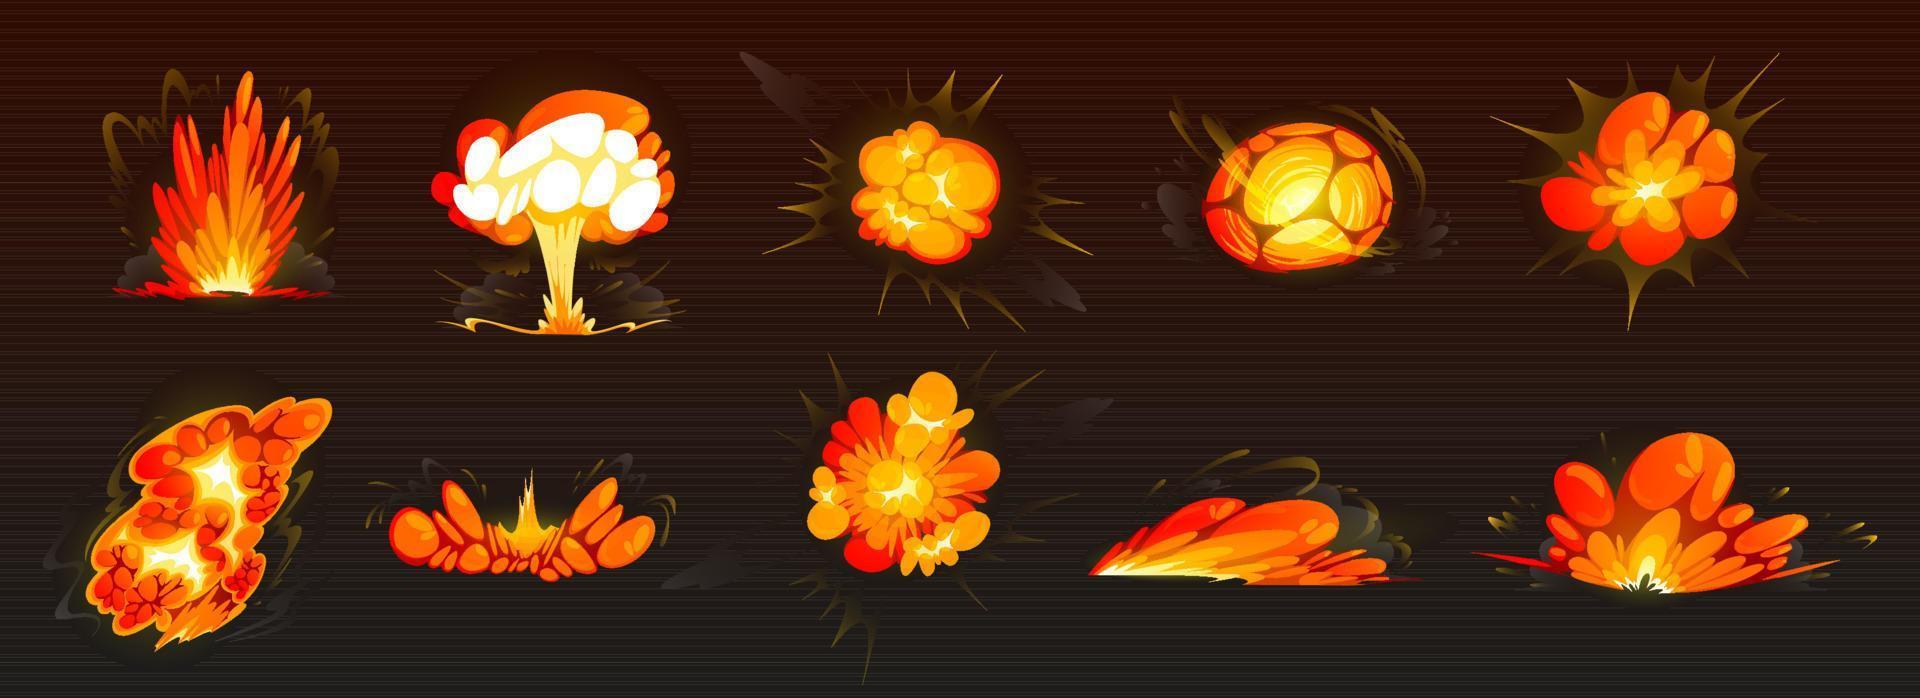 Bombenexplosionen, Feuerstöße, Explosion vektor